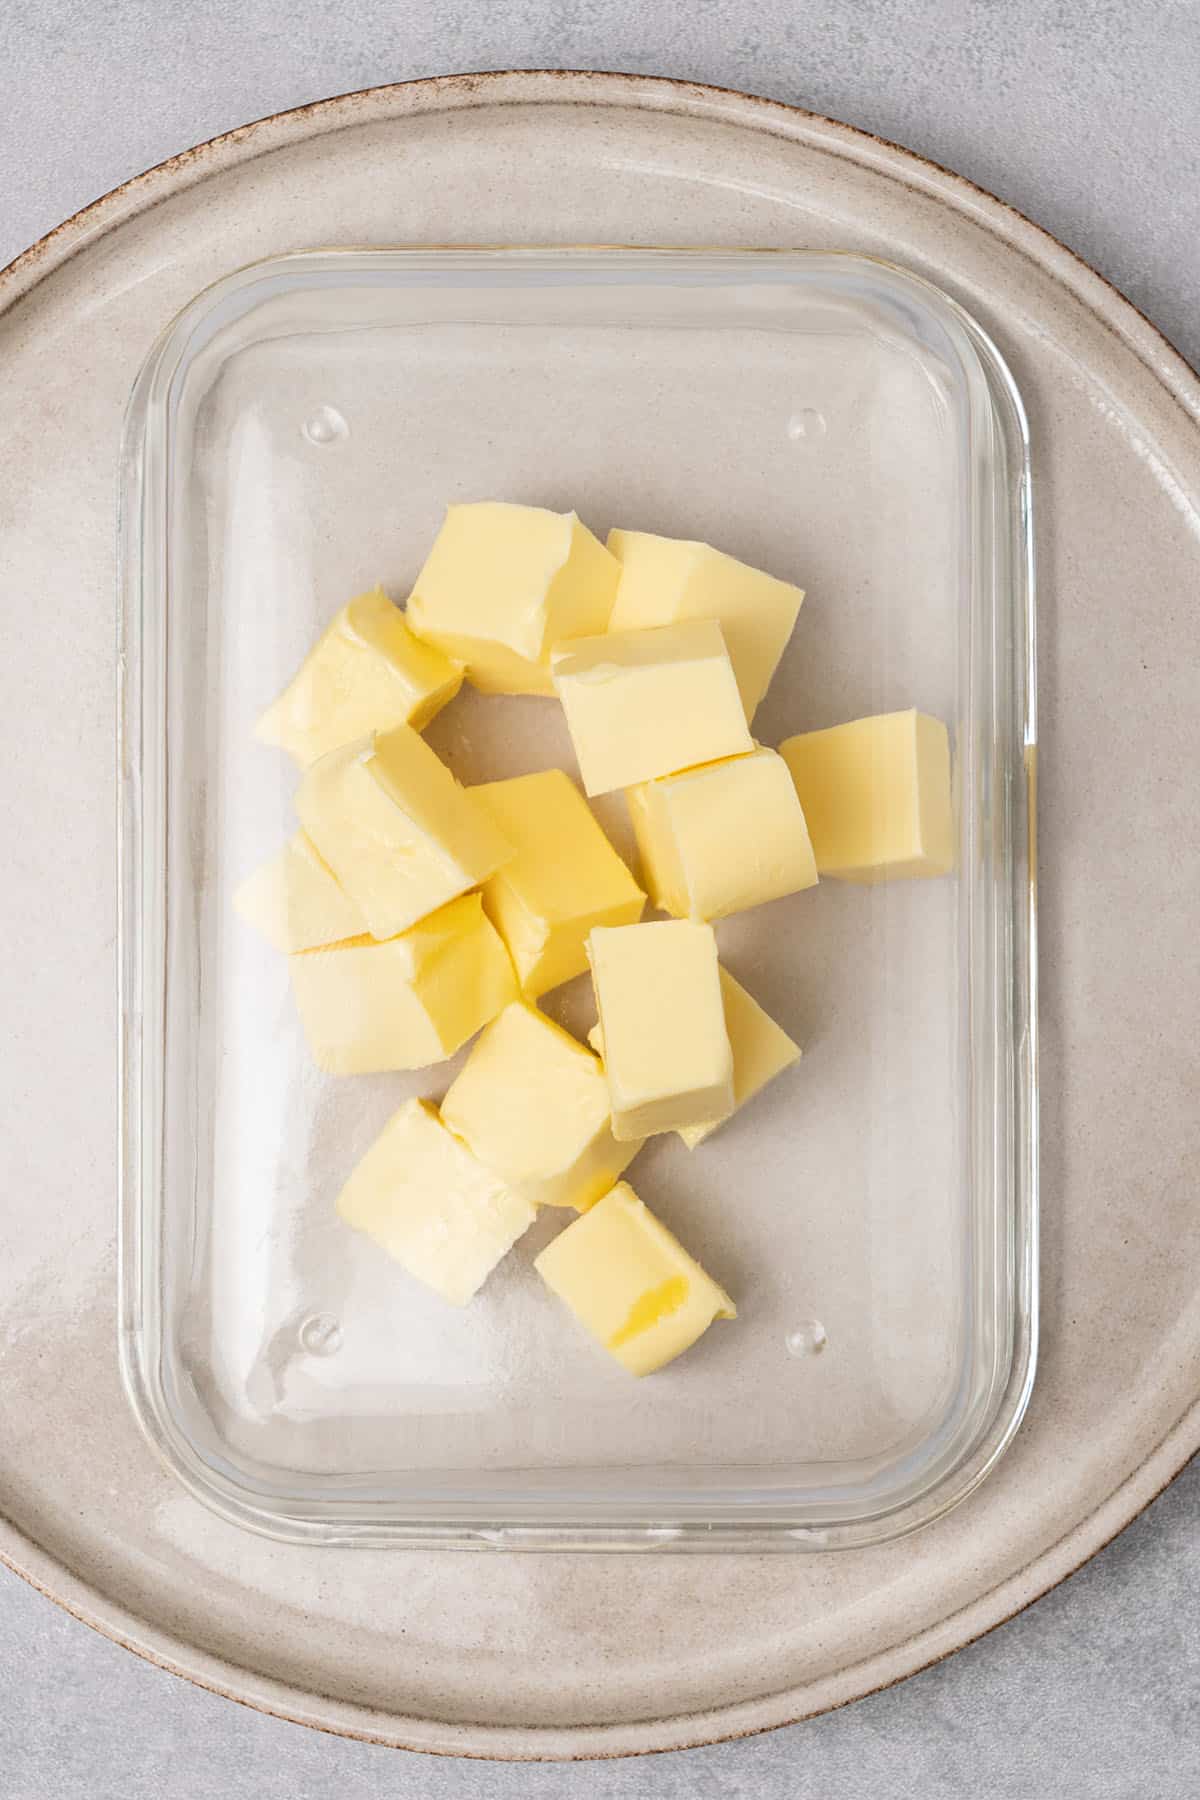 butter cubes under a glass.